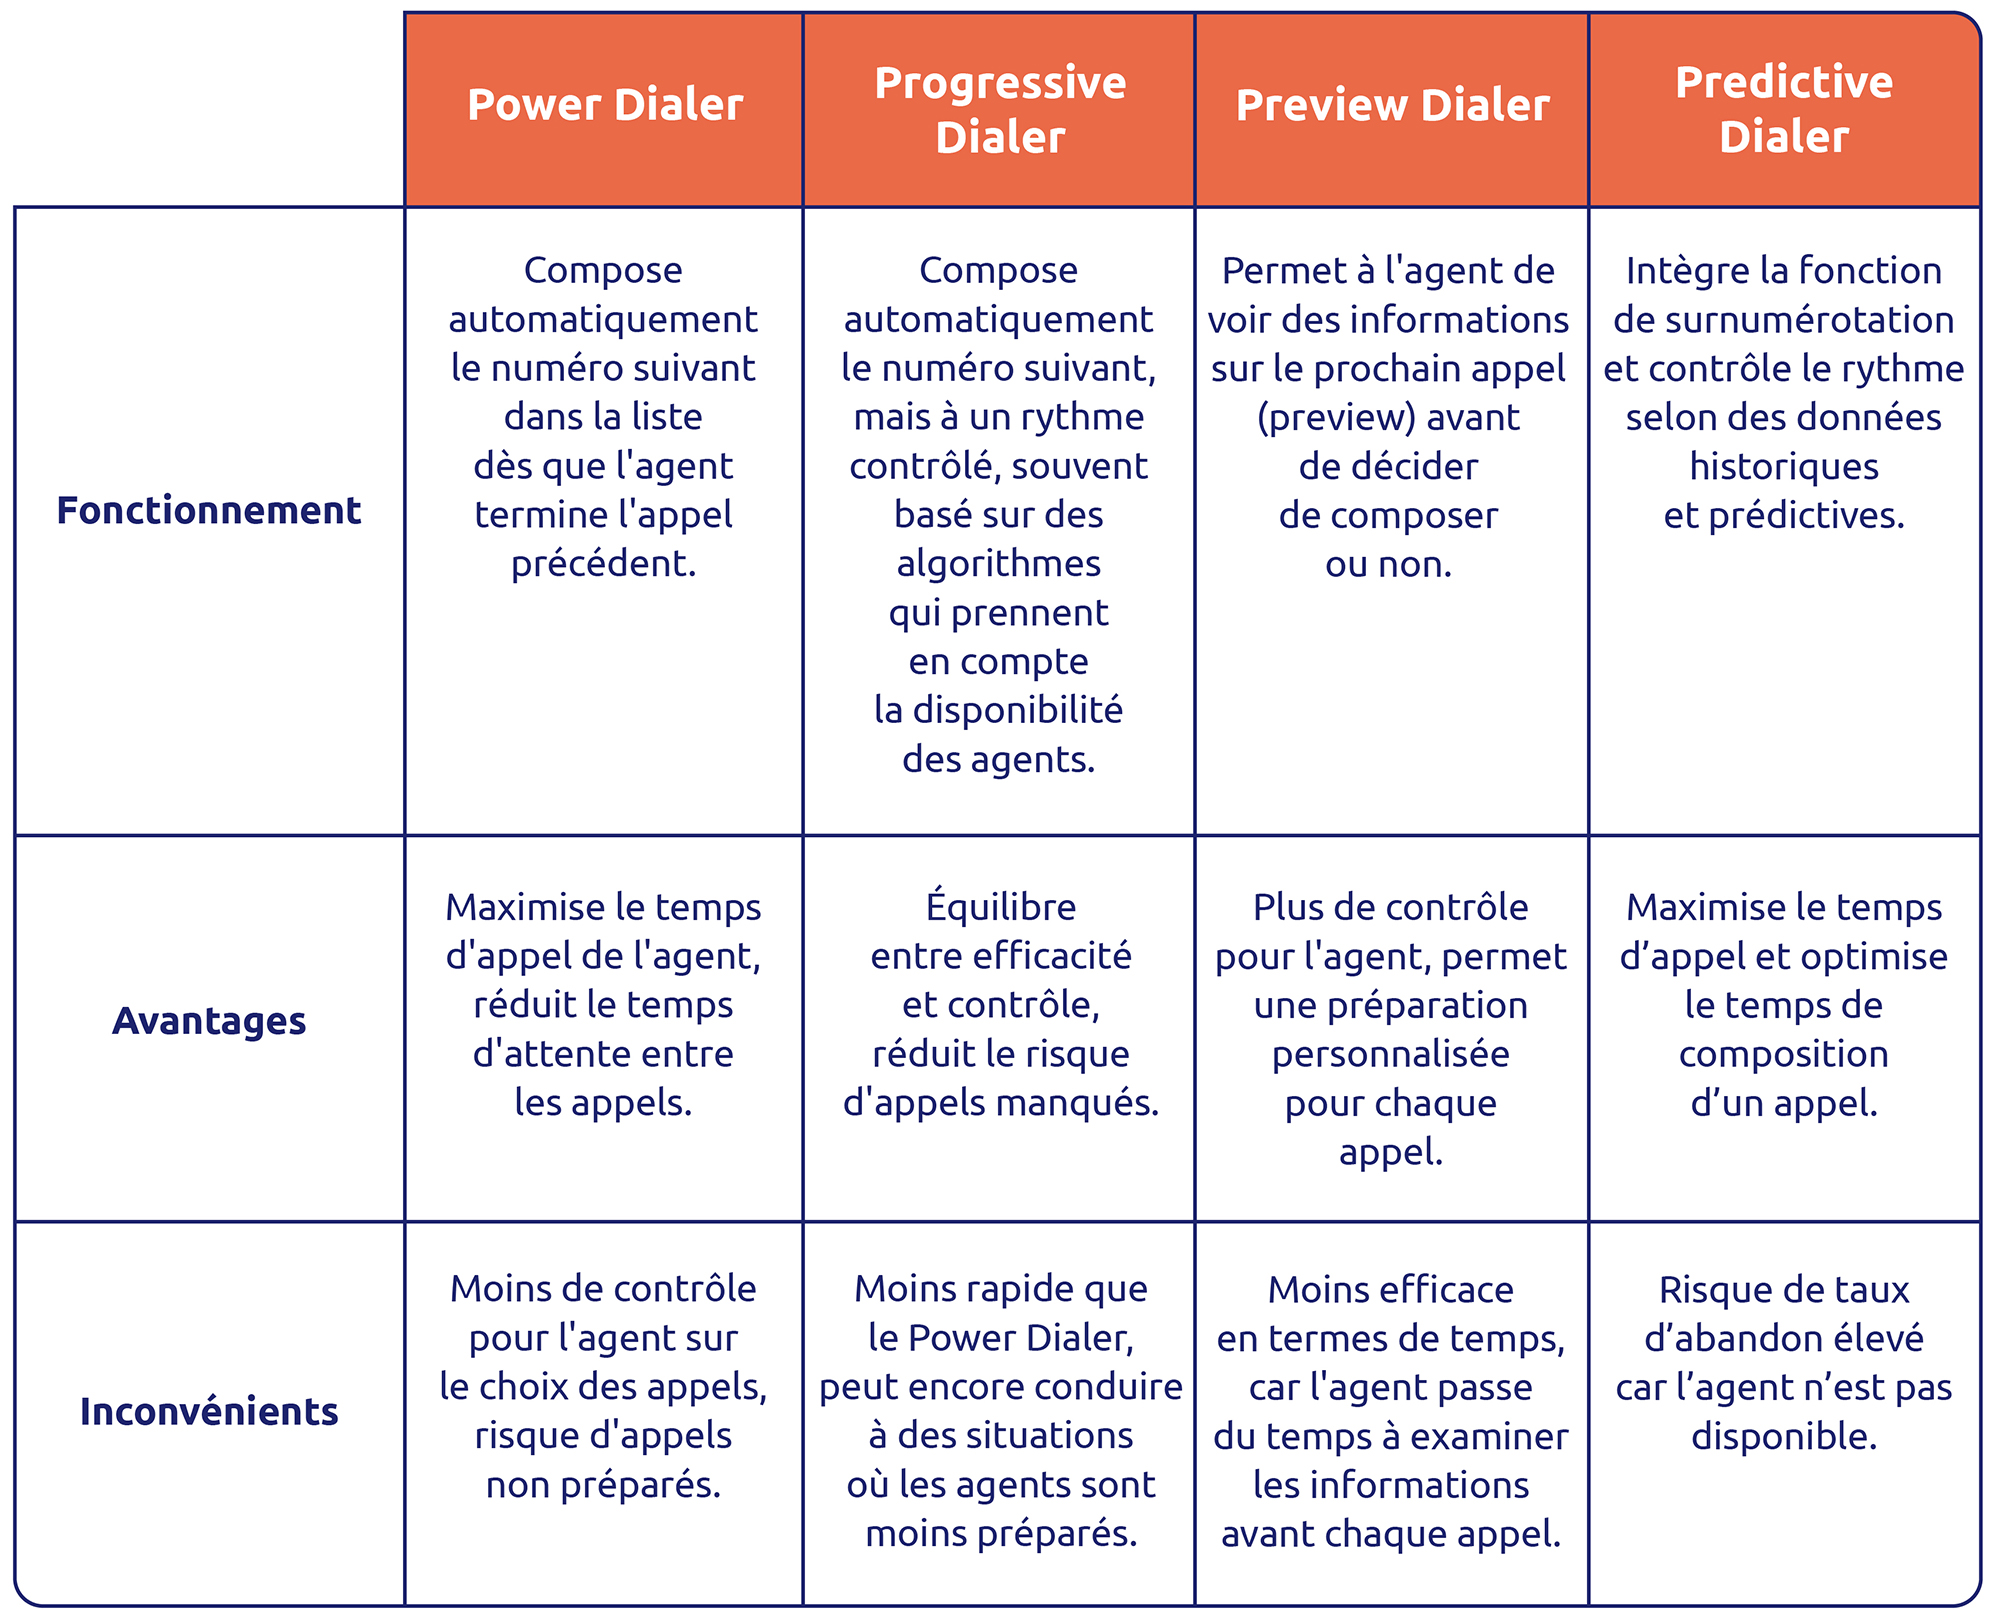 Différence entre Power Dialer, Progressive Dialer, Preview Dialer et Predictive Dialer